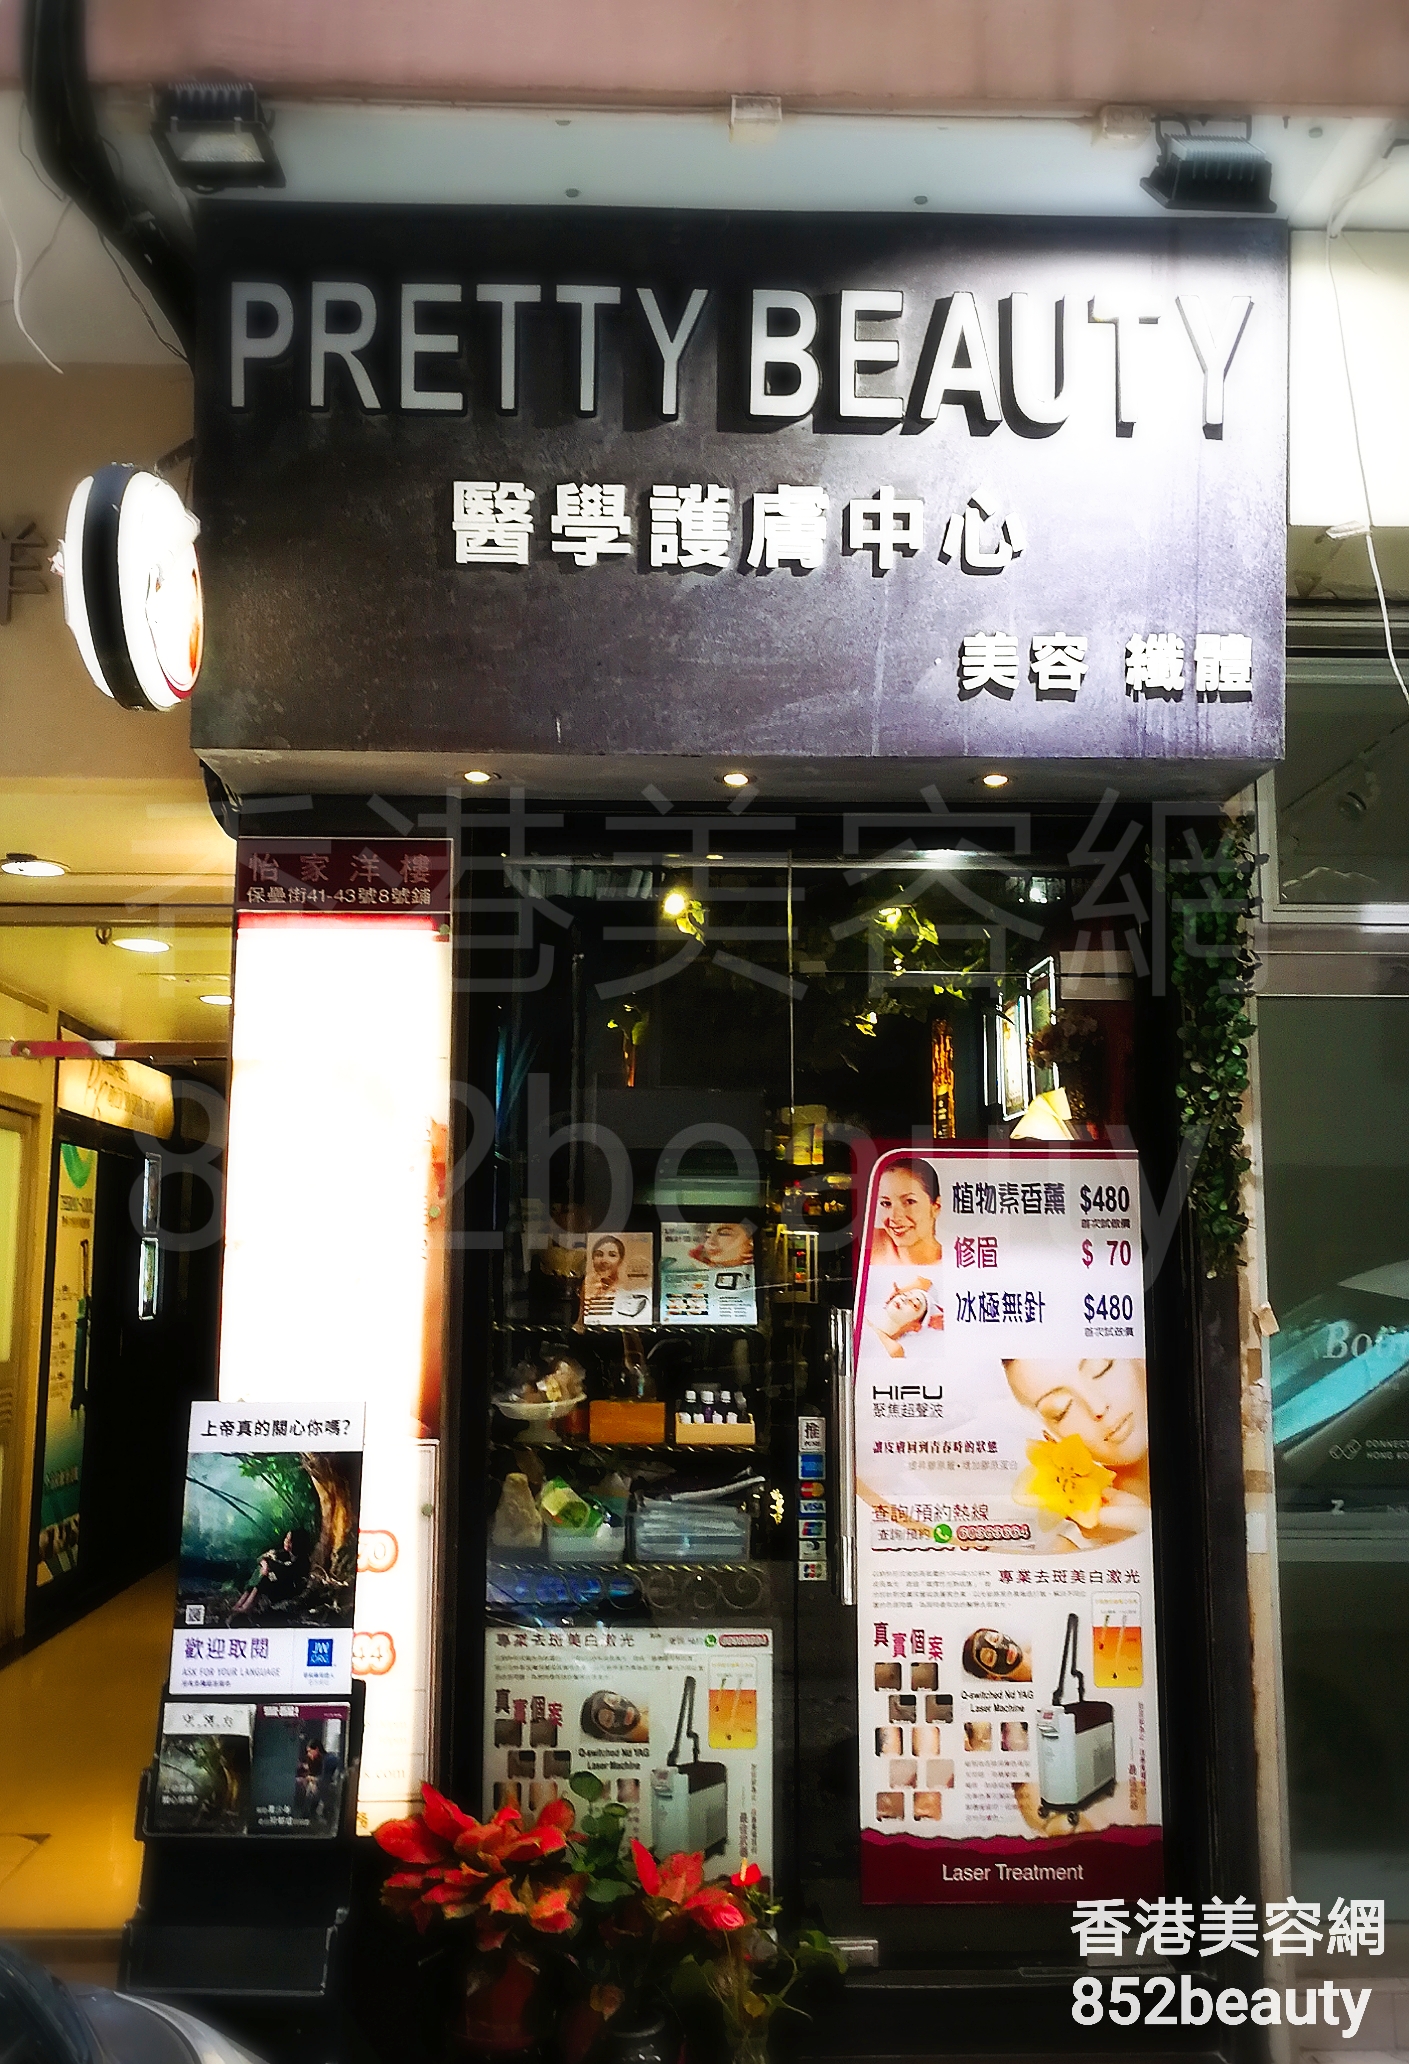 医学美容: Pretty Beauty 醫學護膚中心 (北角店)